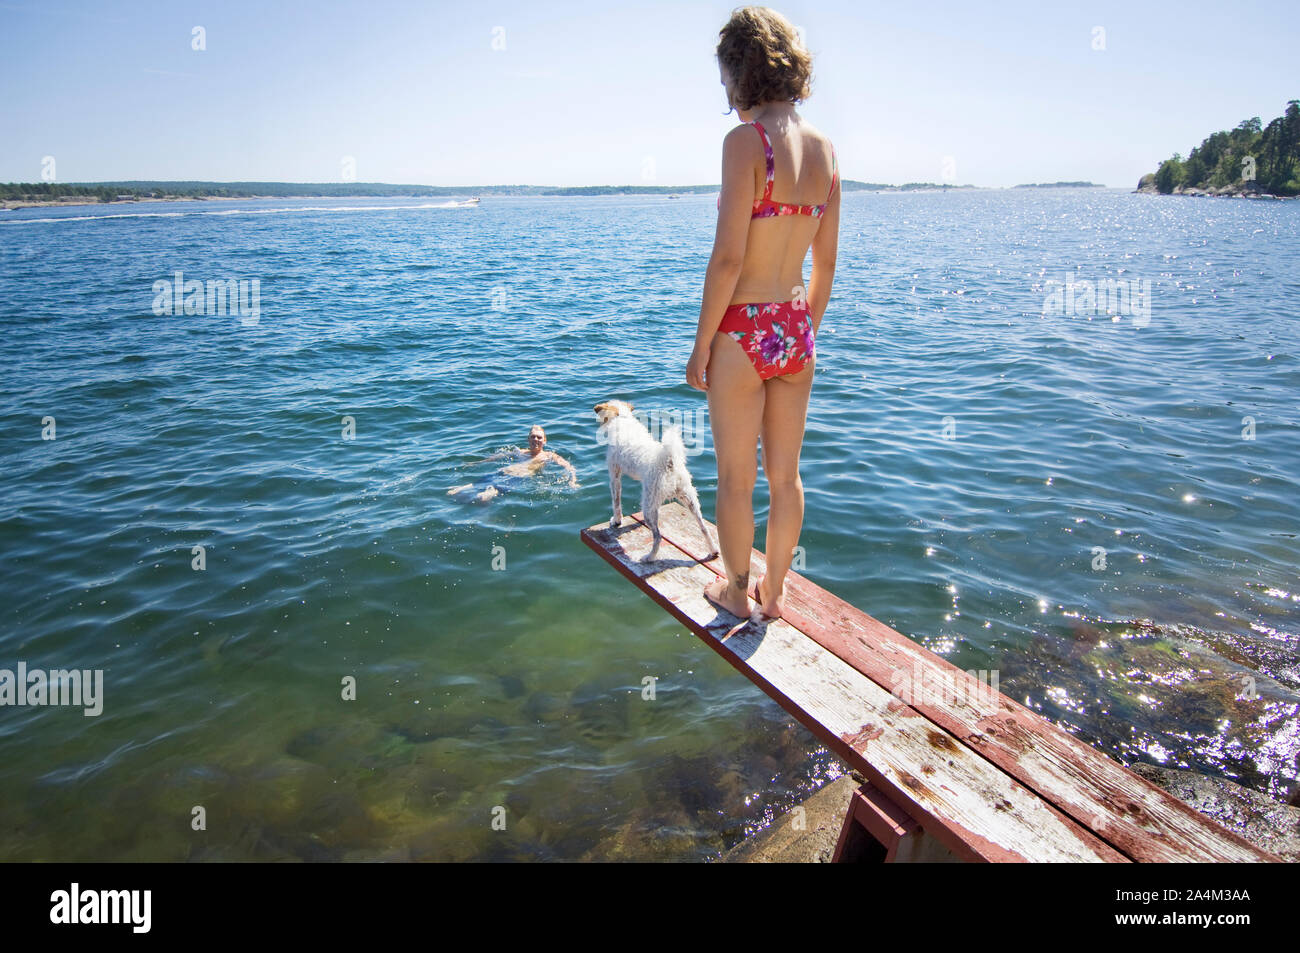 Woman in bikini on diving board in Norway Stock Photo - Alamy